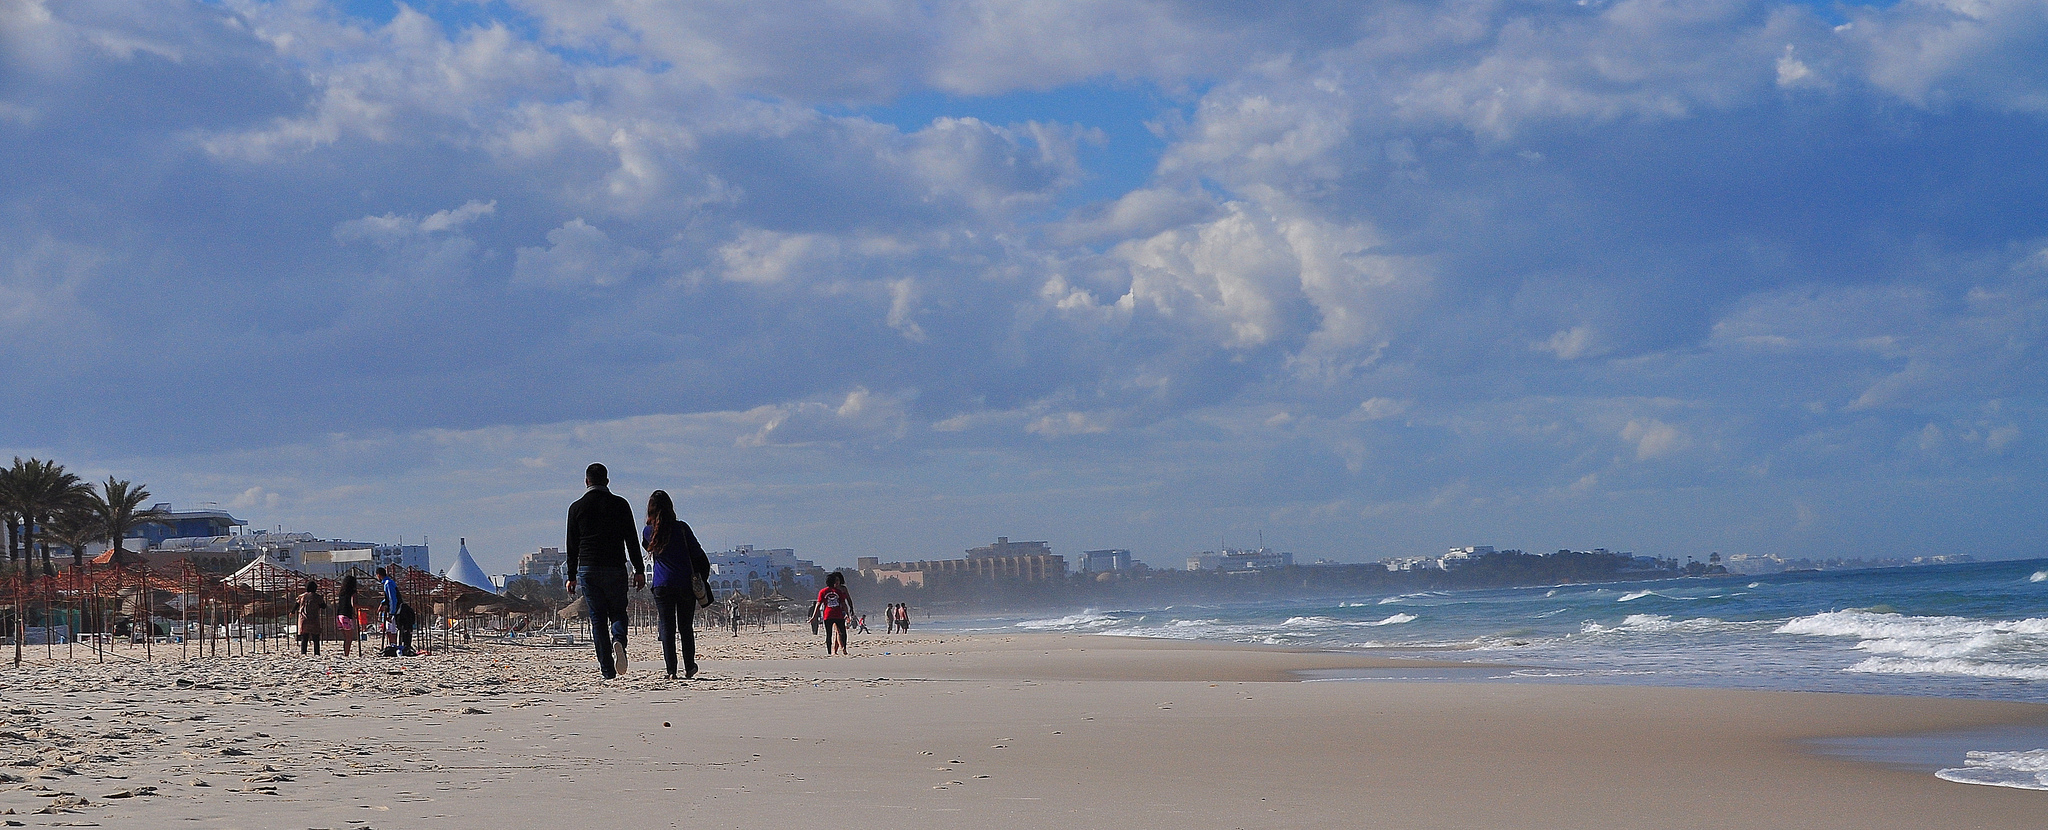 Une plage de Sousse, Tunisie. Crédit R. Gj / Flickr